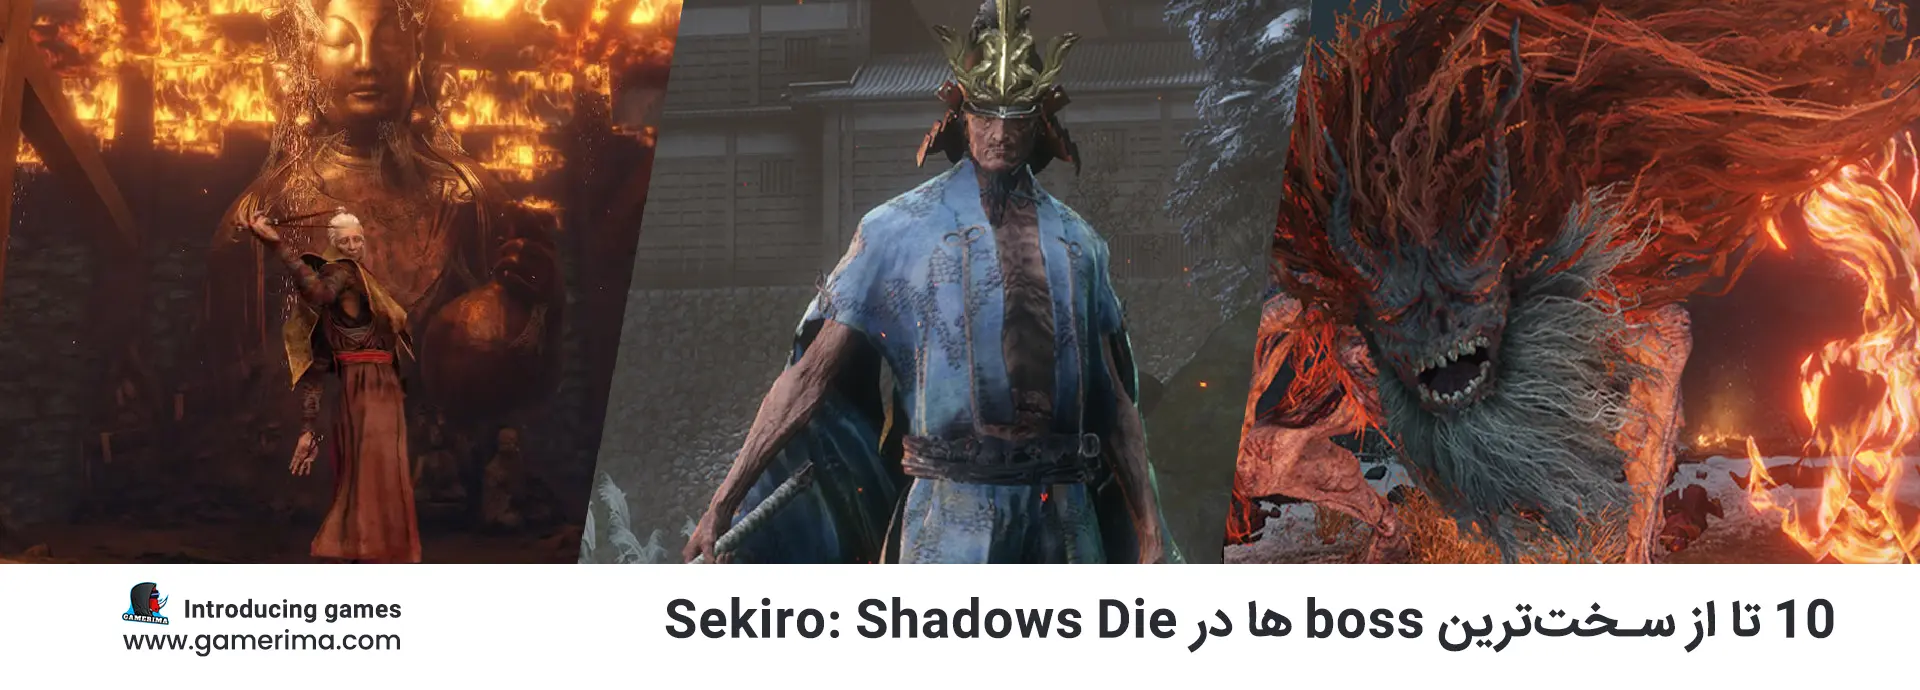 ۱۰ سخت ترین boss ها در Sekiro: Shadows Die Twice